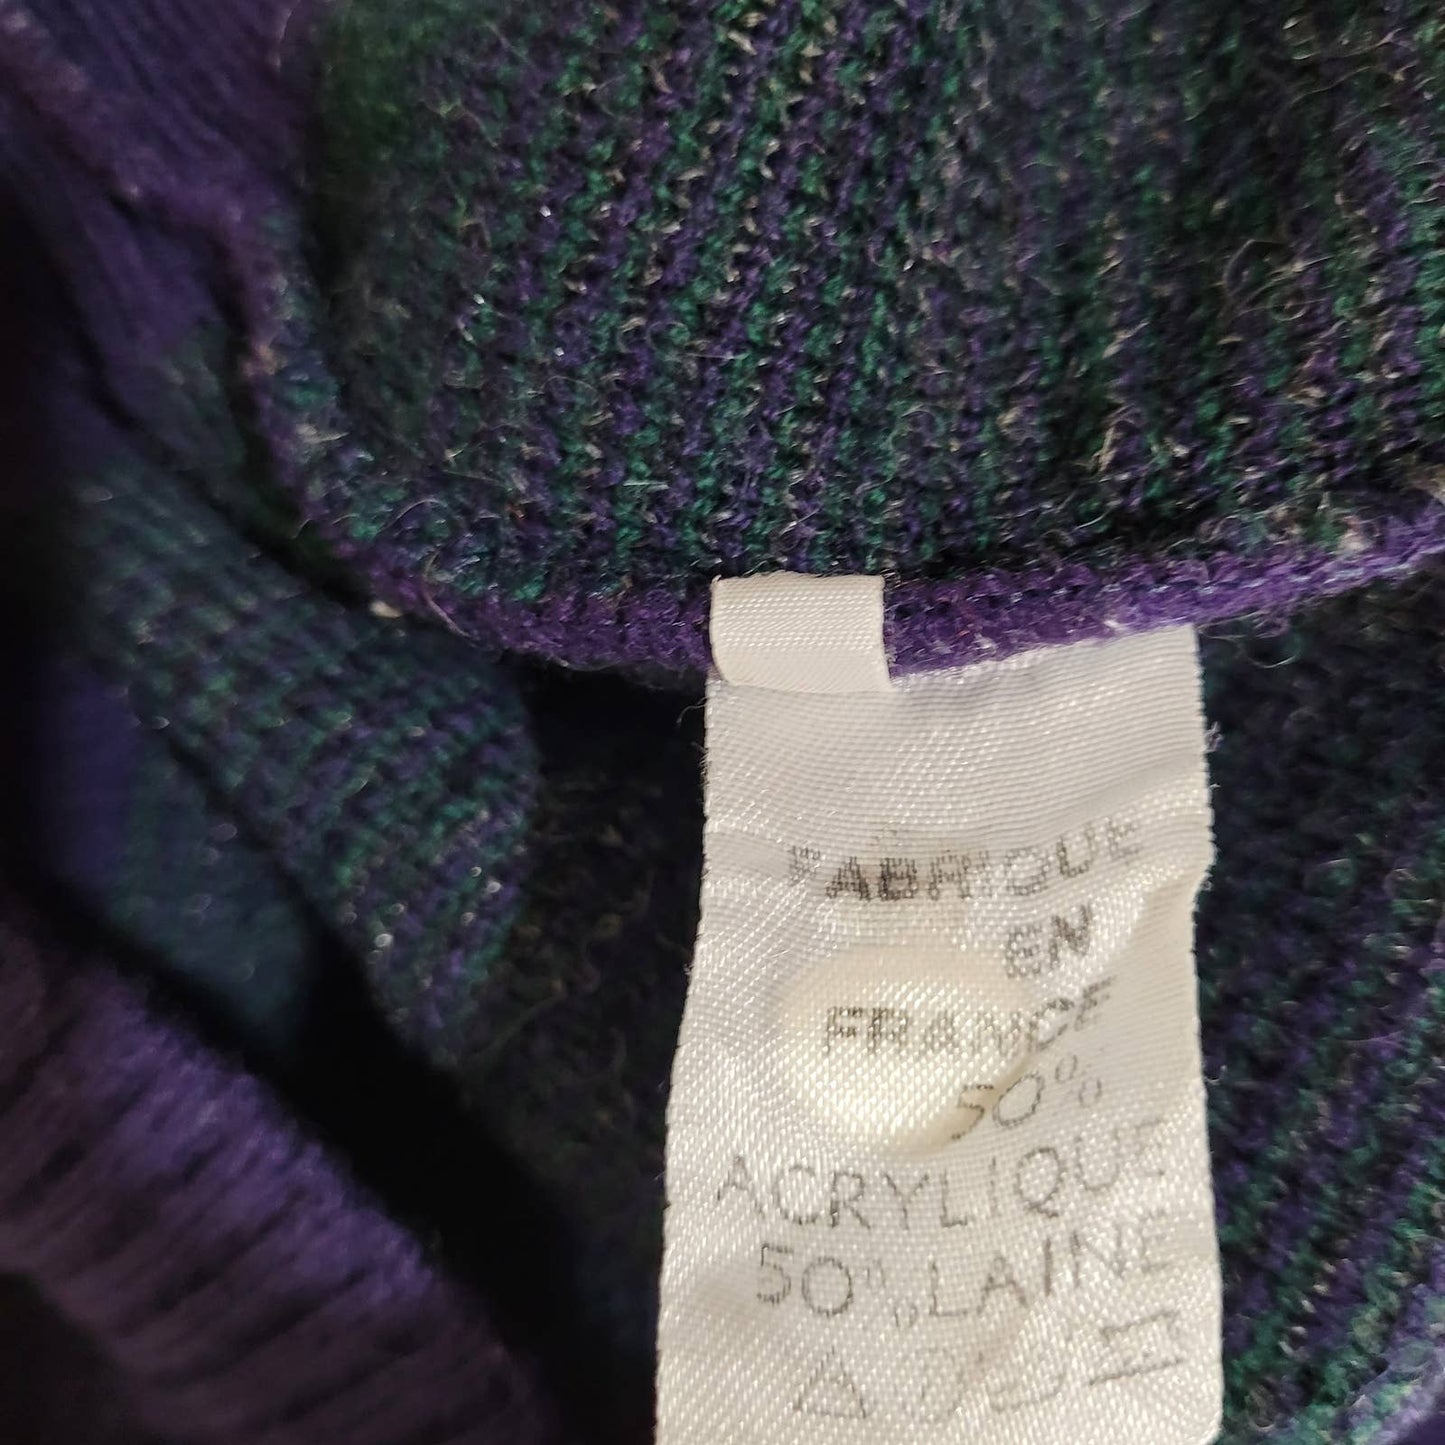 Vintage Laurent Cerrer Paris Crewneck Wool Blend Sweater - Size SmallMarkita's ClosetLaurent Cerrer